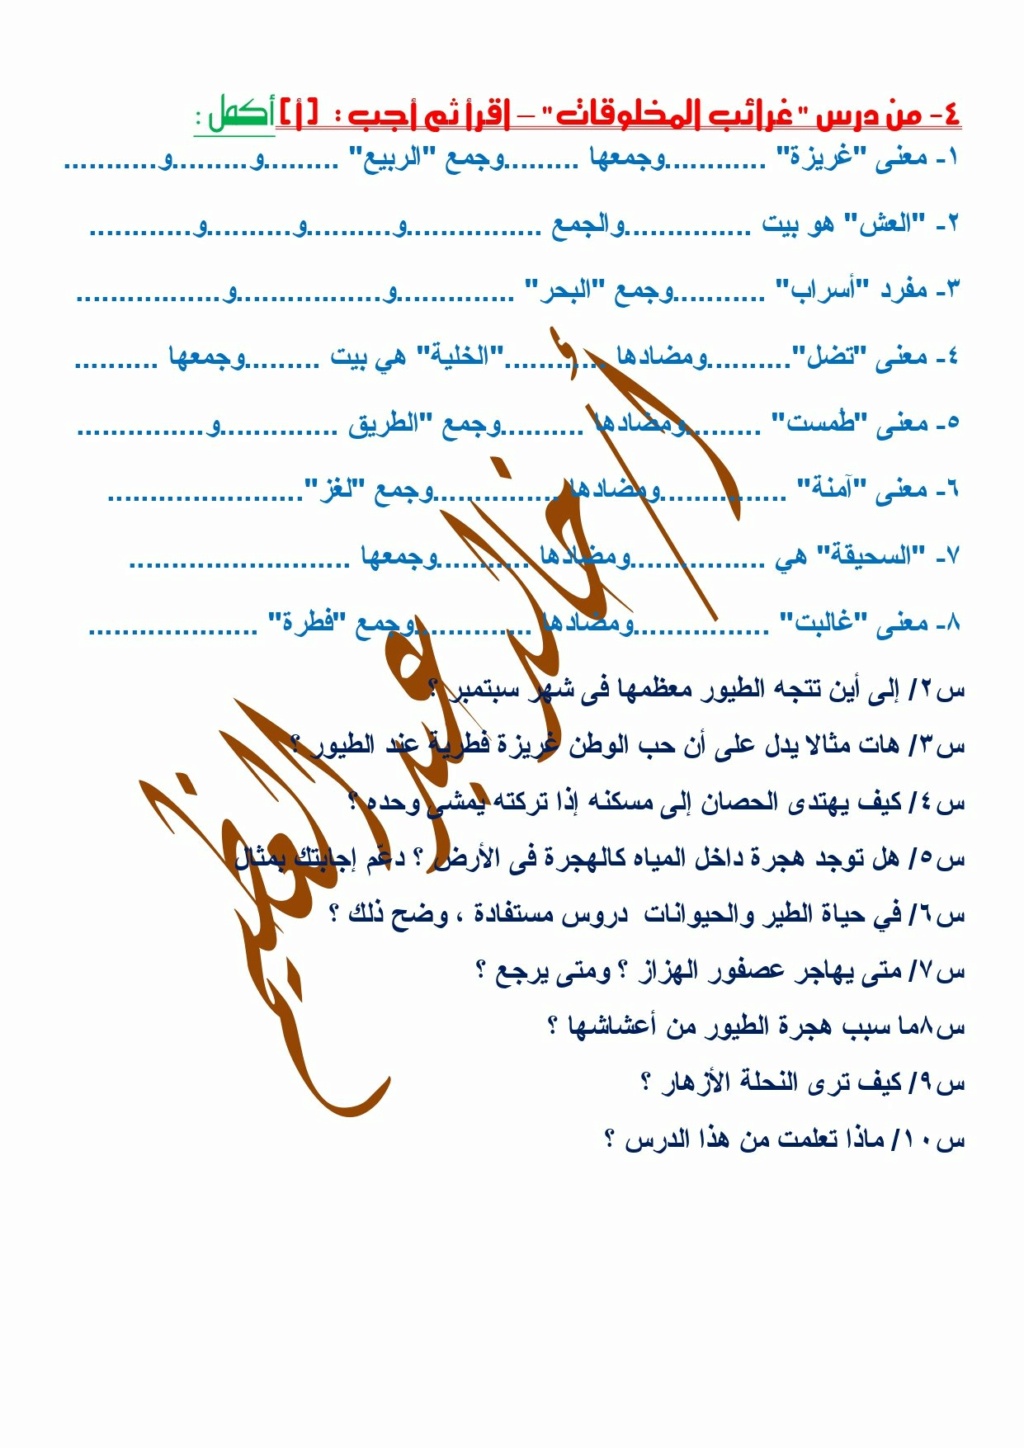 مراجعة القراءة ليلة الامتحان للصف الأول الإعدادي أ/ خالد عبد العظيم  1911